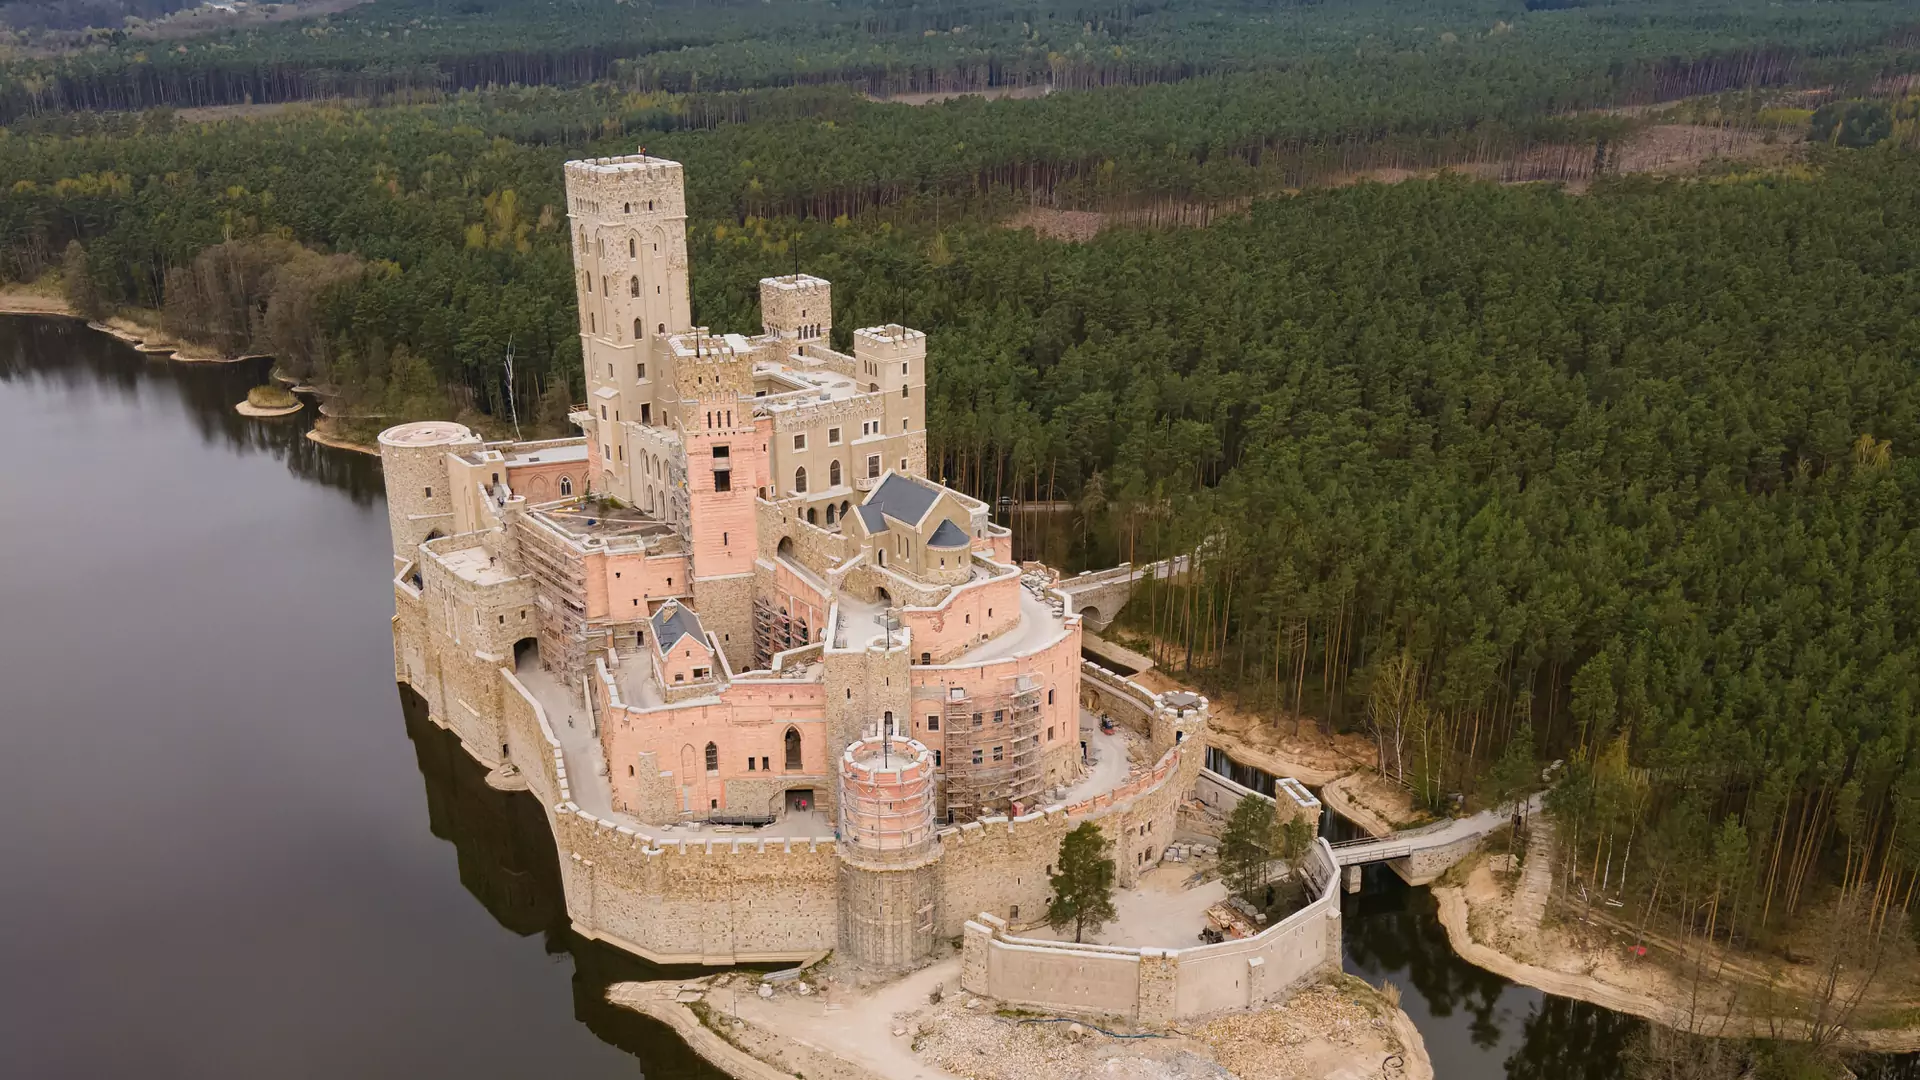 Architekt kontrowersyjnego zamku w Stobnicy: od trzech lat żyję w cieniu oskarżeń